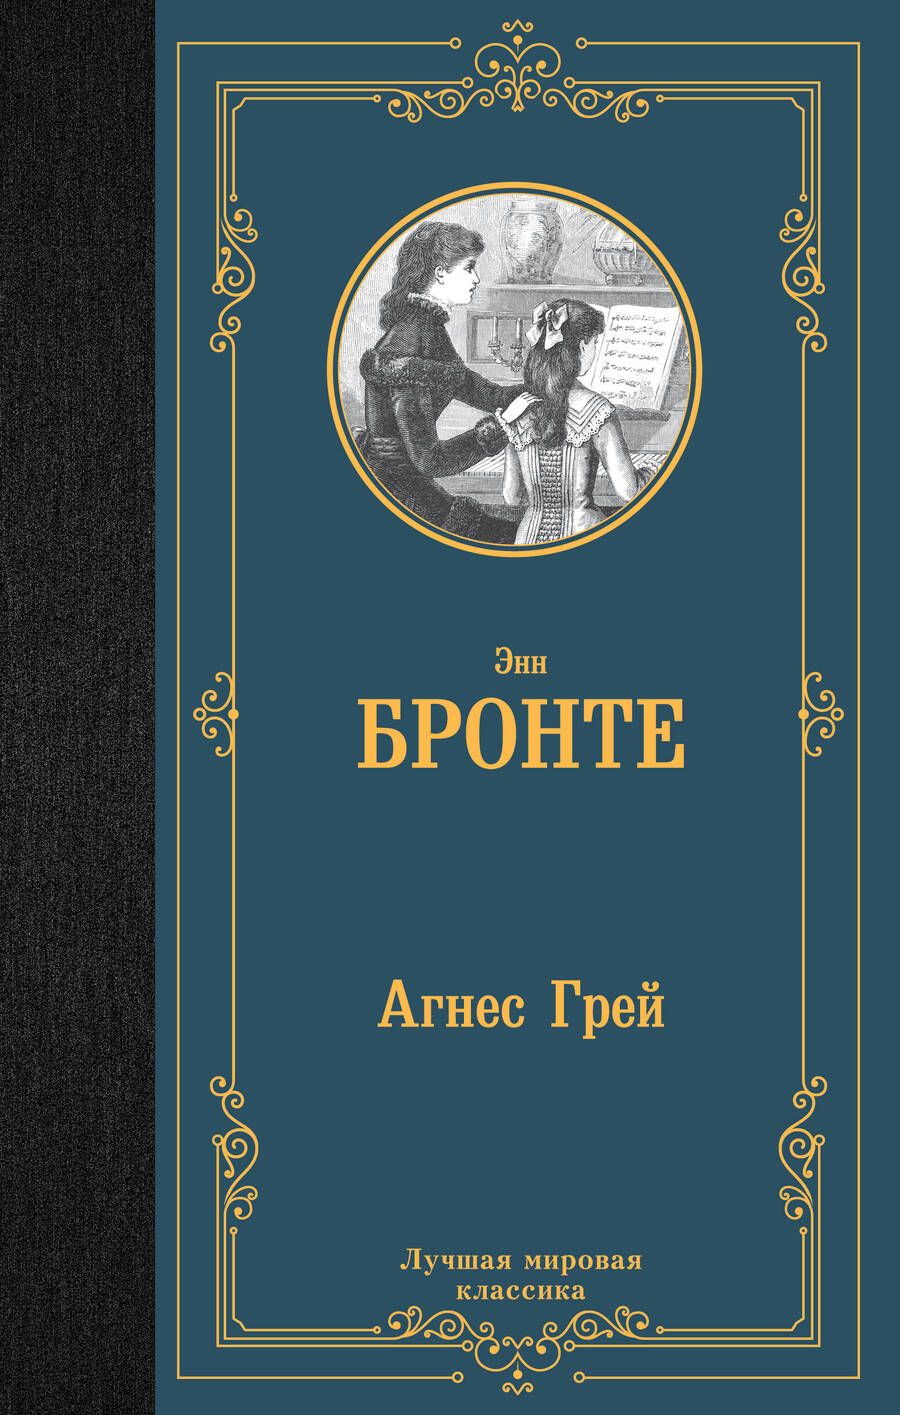 Обложка книги "Бронте: Агнес Грей"